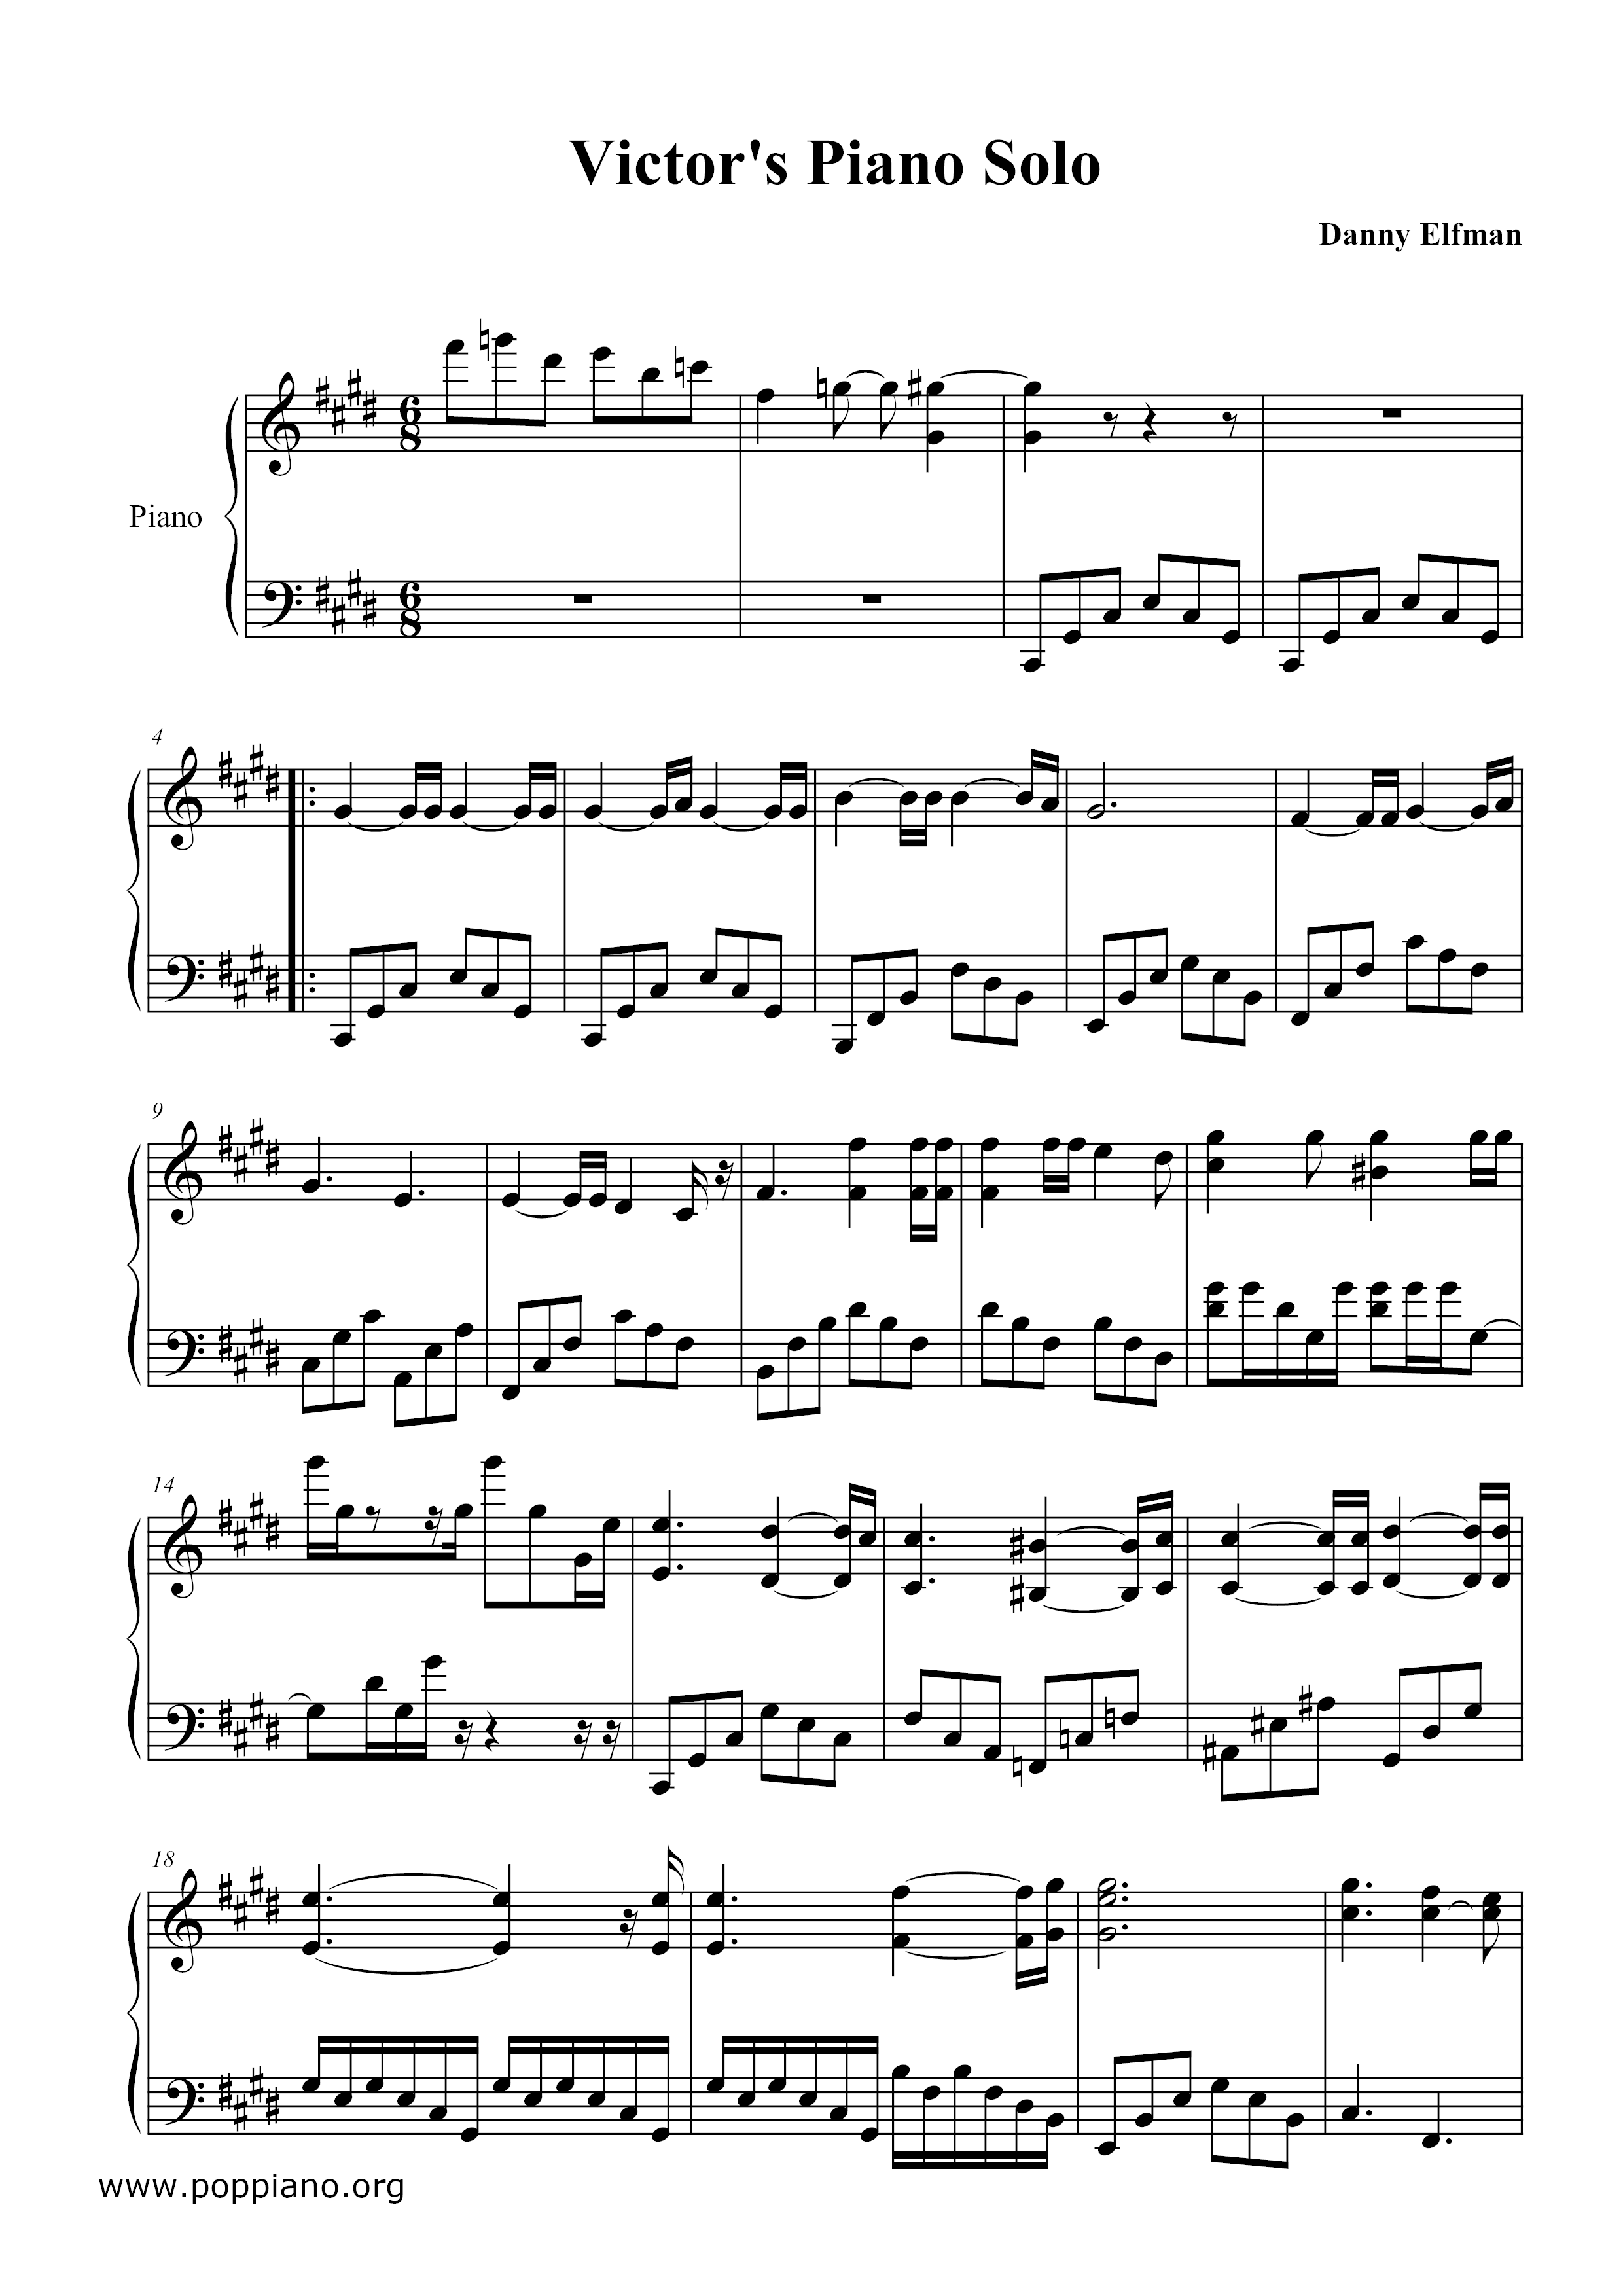 Tim Burton's Corpse Bride - Victor's Piano Soloピアノ譜